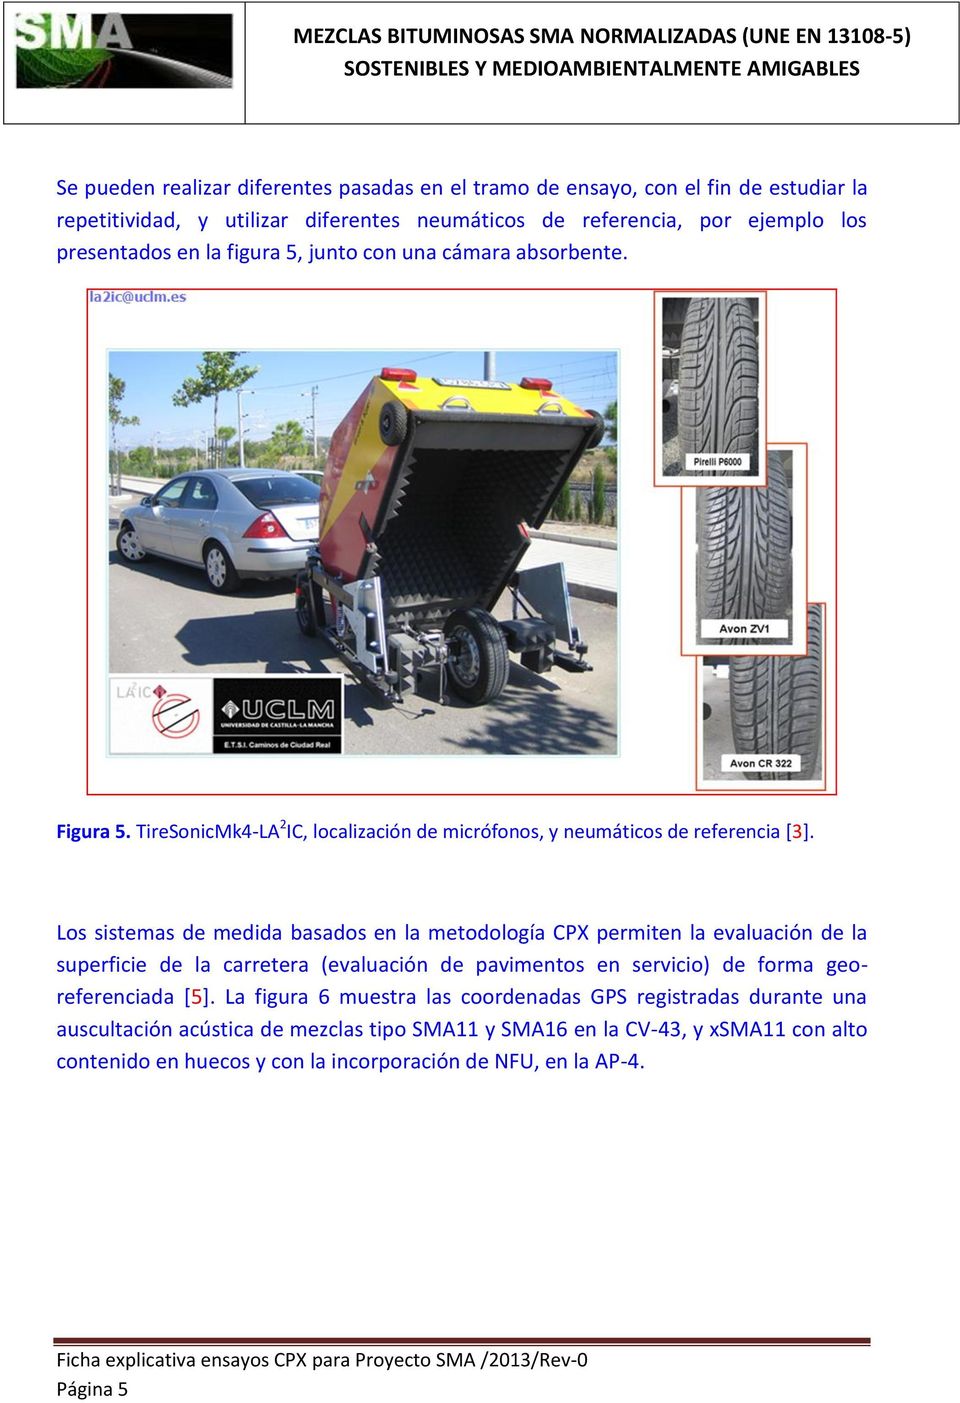 Los sistemas de medida basados en la metodología CPX permiten la evaluación de la superficie de la carretera (evaluación de pavimentos en servicio) de forma georeferenciada [5].